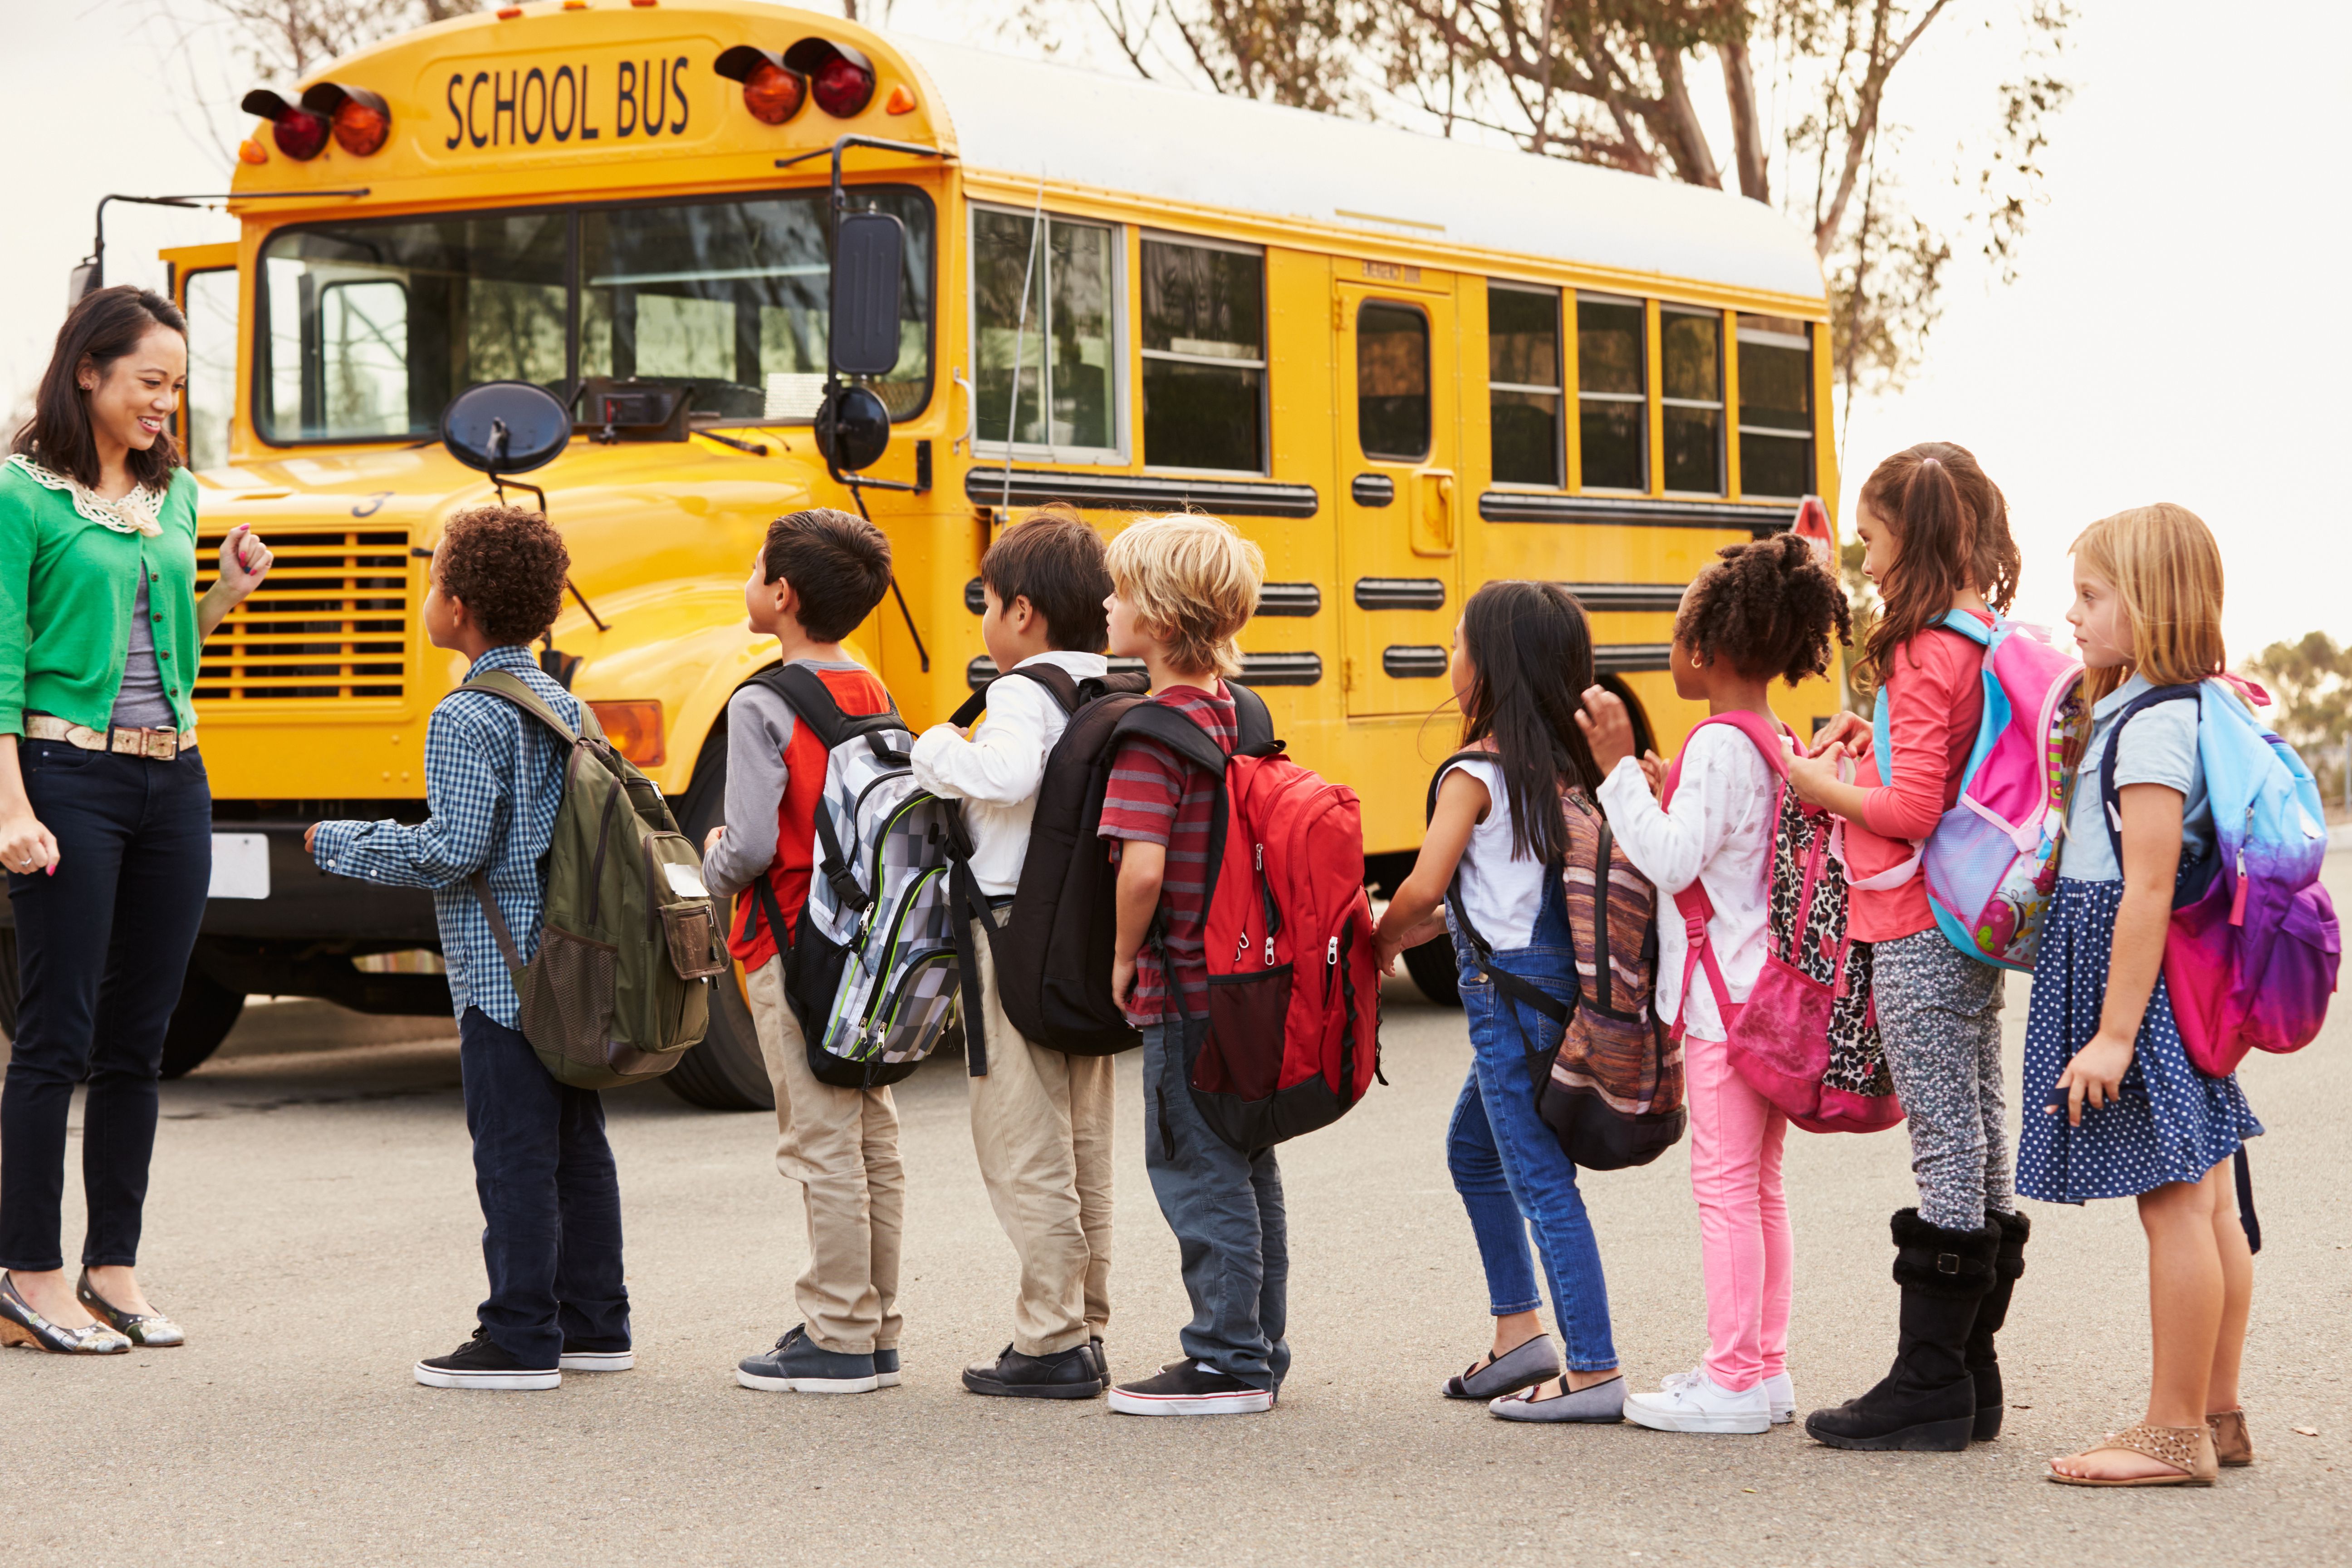 Kinder, die auf den Schulbus warten. | Quelle: Shutterstock